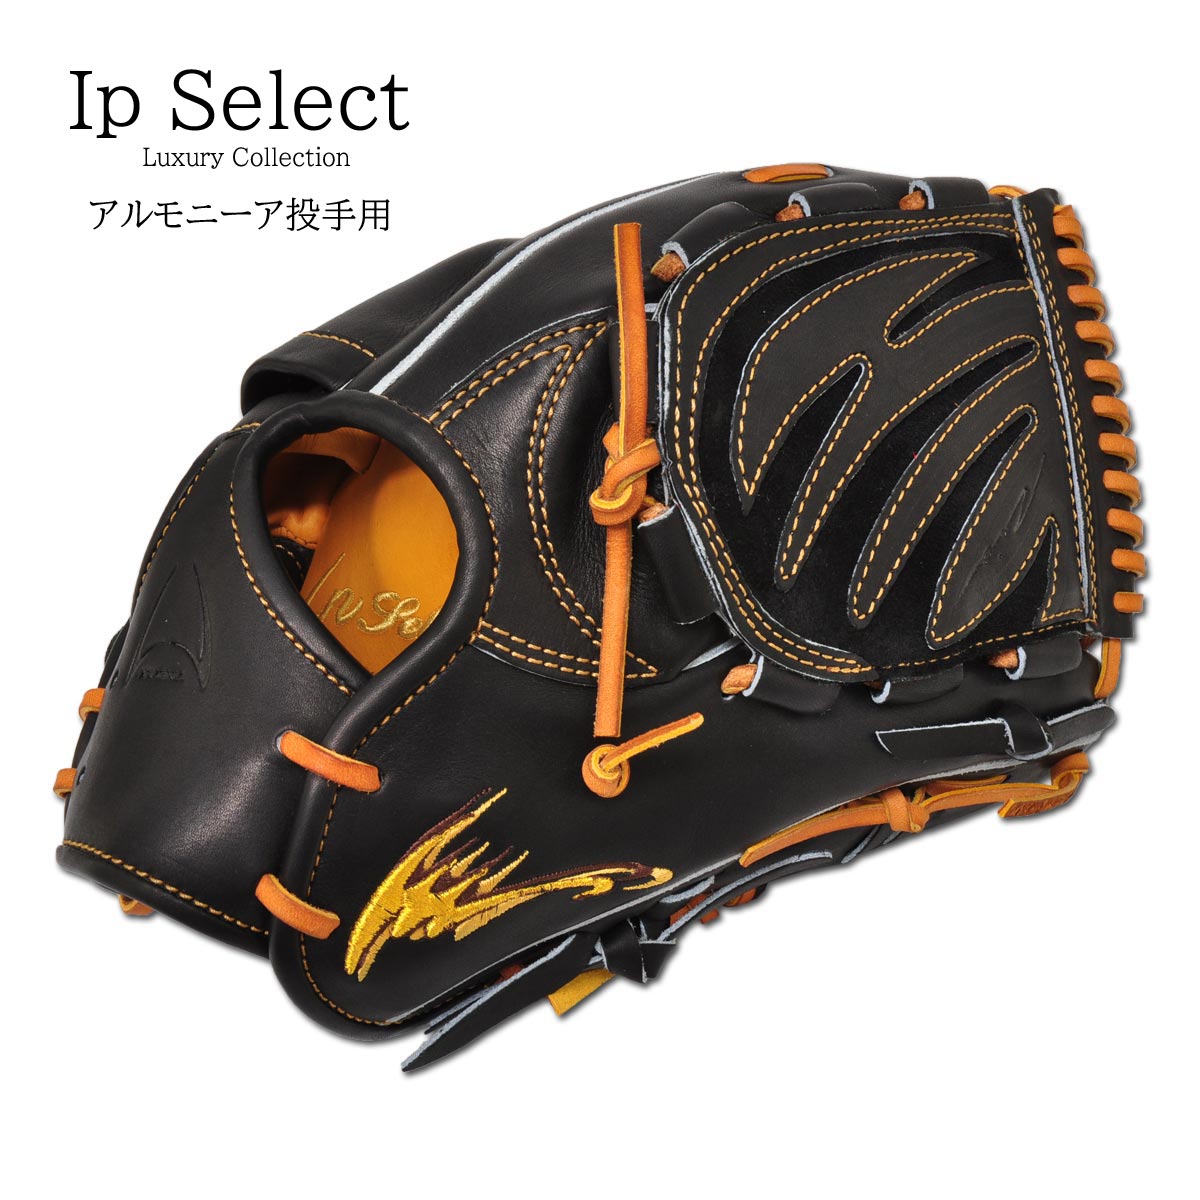 Ip Select［アイピーセレクト］ ラグジュアリーコレクション